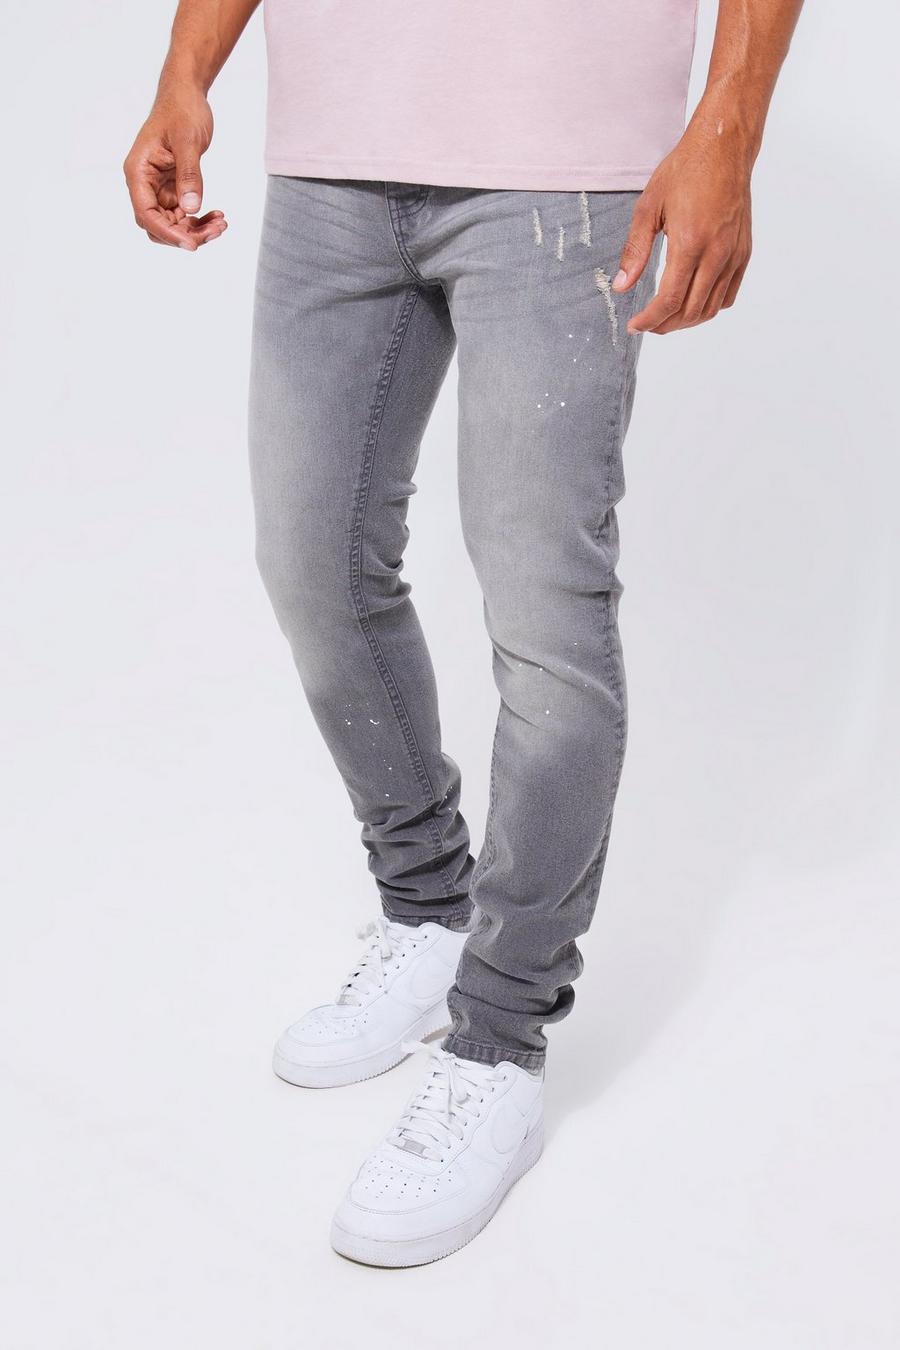 Men's Gray Jeans, Gray Jeans for Men